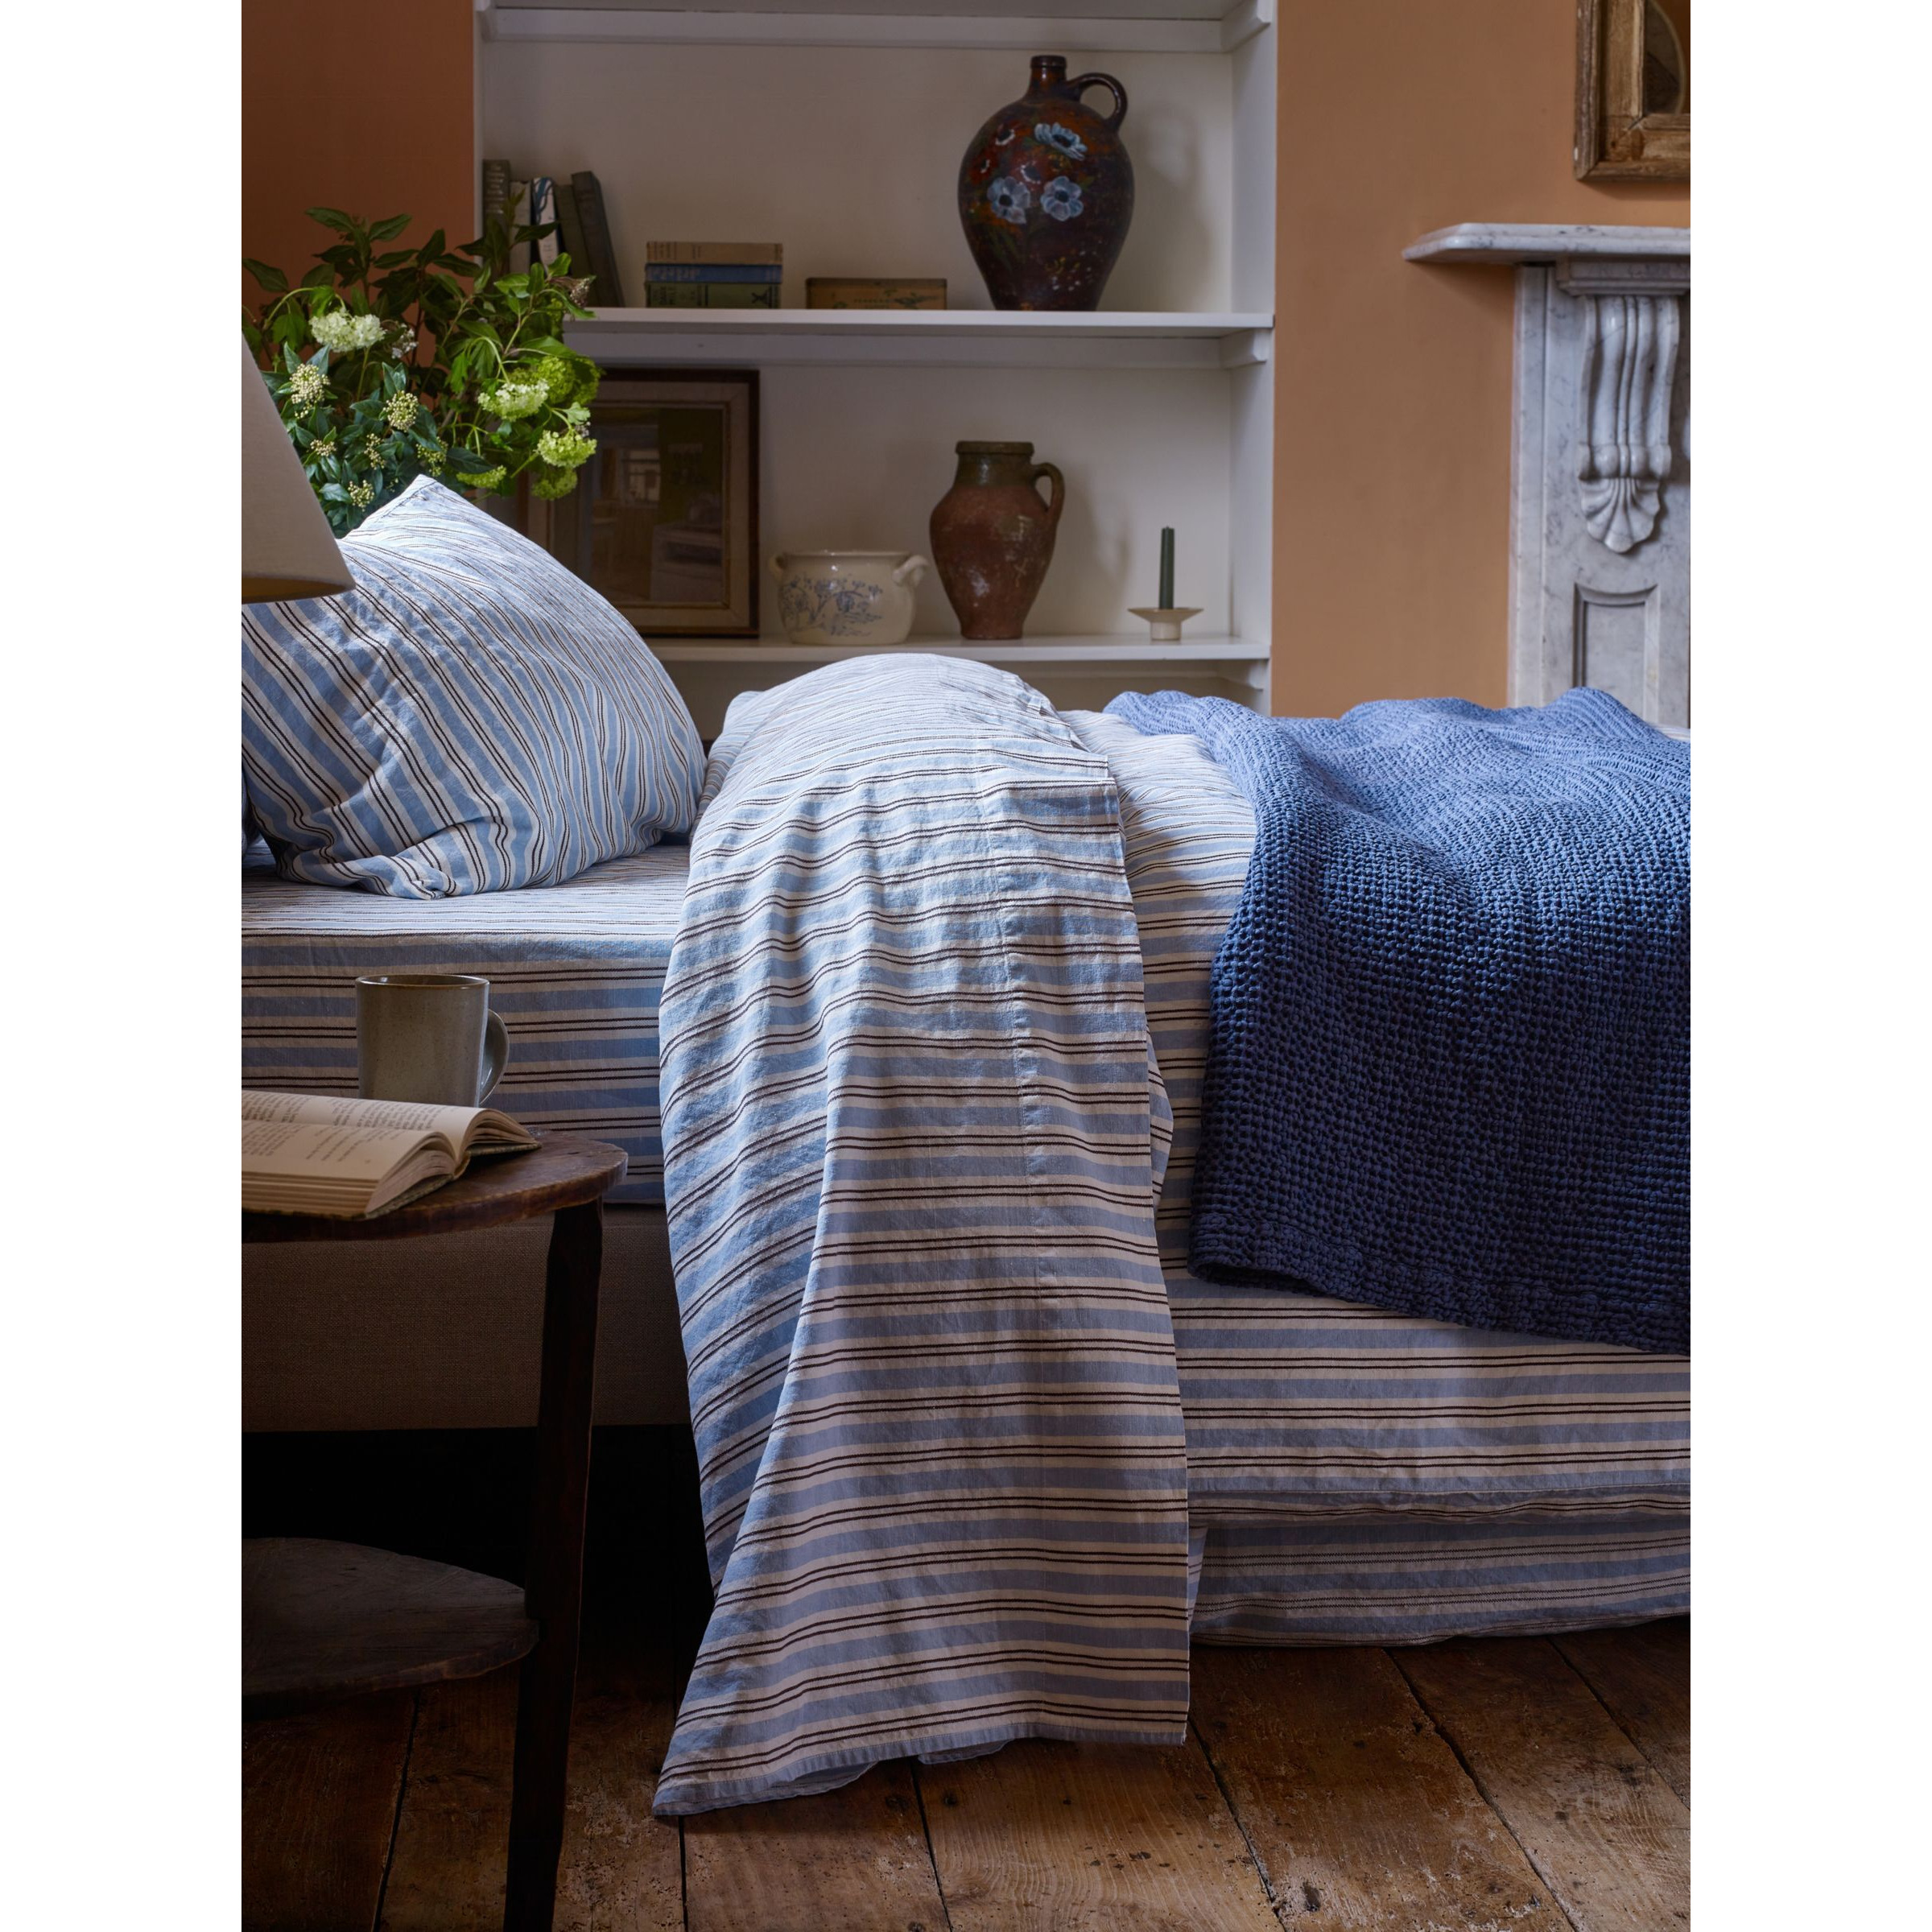 Piglet in Bed Sommerley Stripe Linen Blend Flat Sheet - image 1